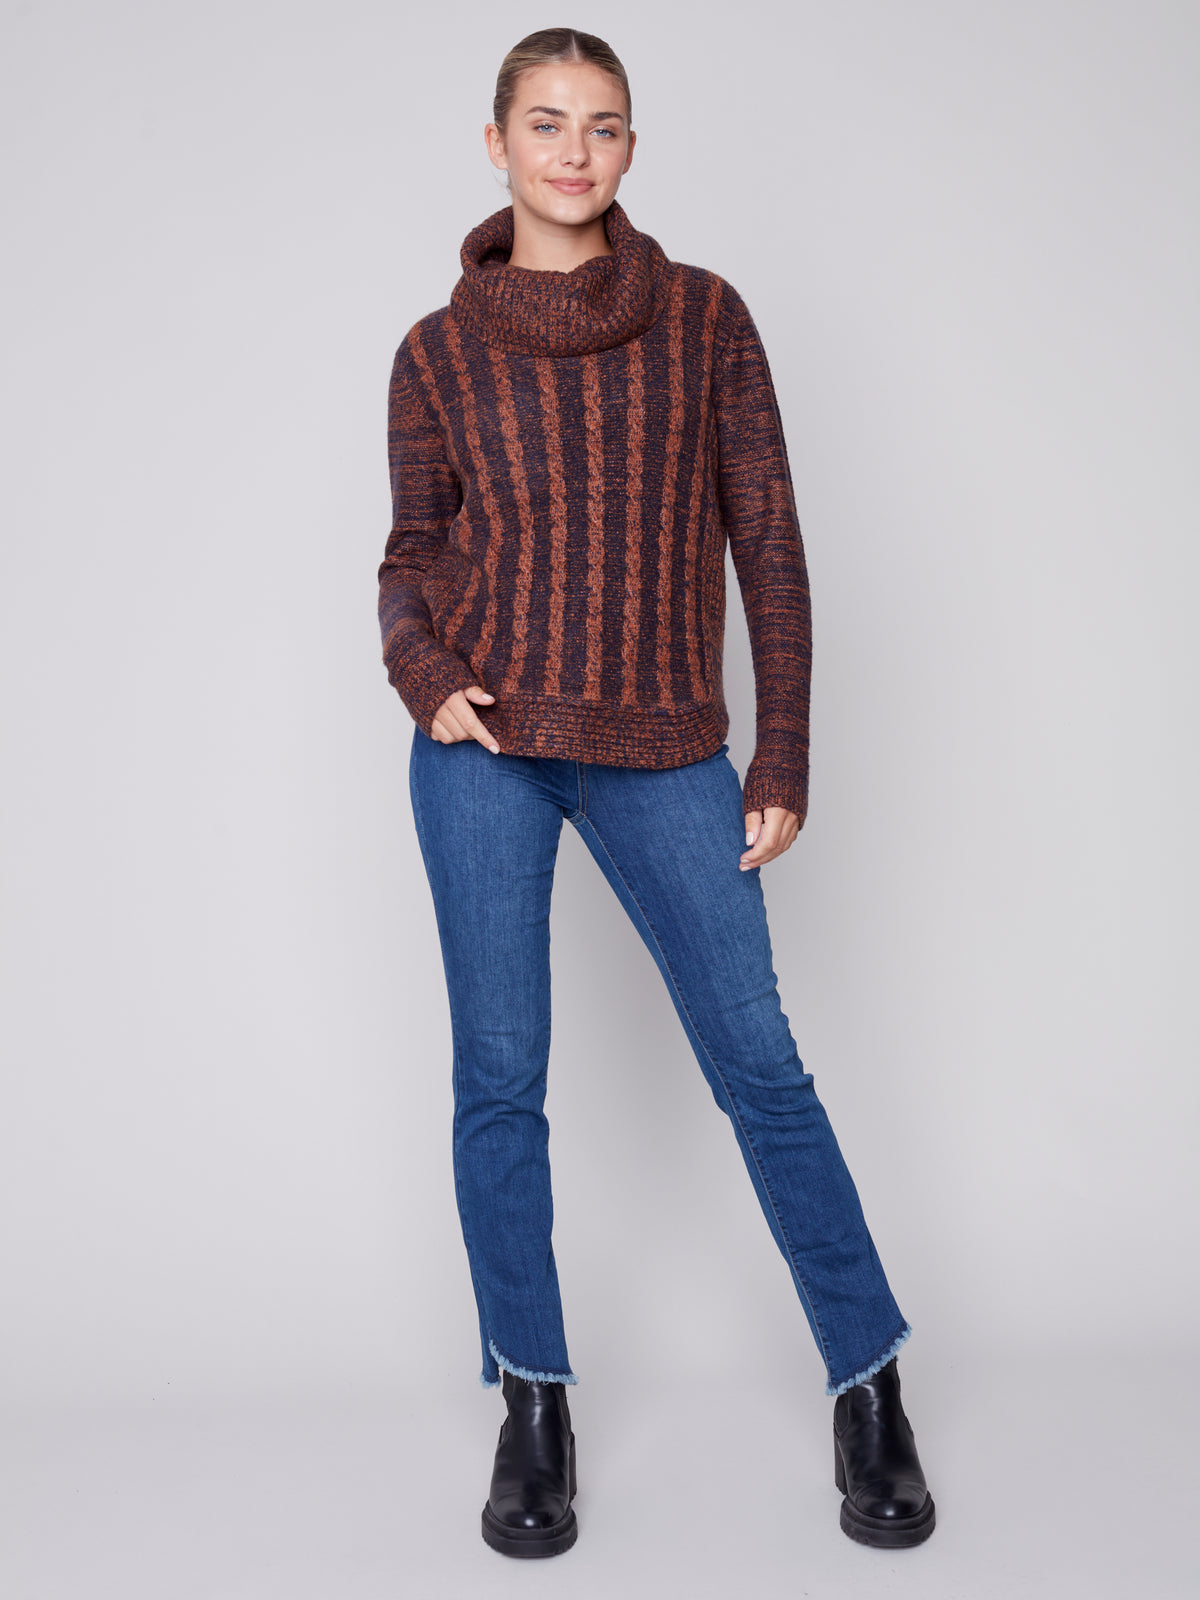 The Lauren Sweater in Cinnamon